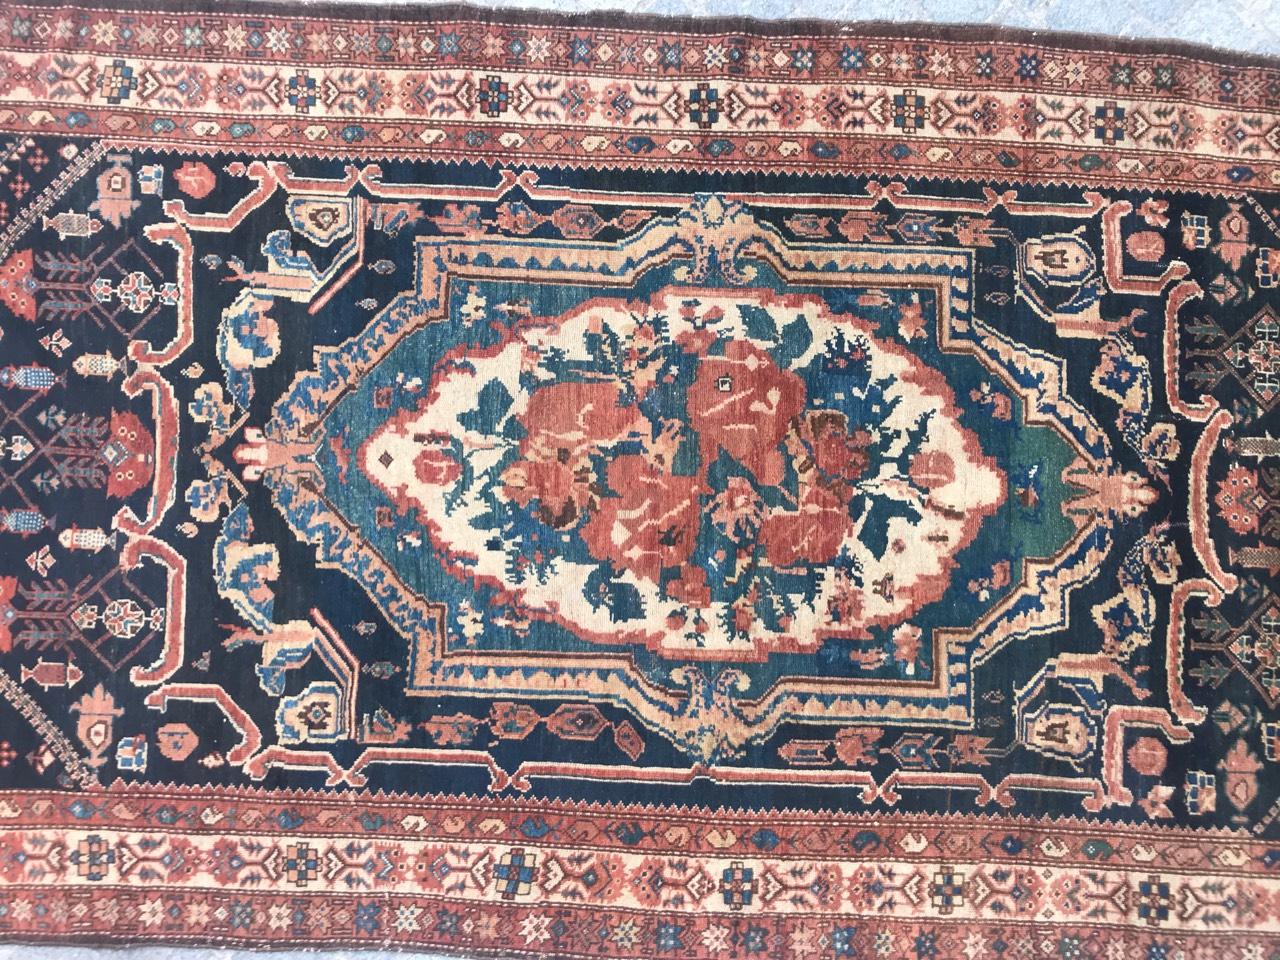 Découvrez l'élégance intemporelle de notre exquis tapis Bakhtiar de la fin du XIXe siècle. Orné d'un captivant médaillon central au motif floral de la Savonnerie, de motifs tribaux et d'une riche palette d'orange, de bleu, de vert, de rose et de